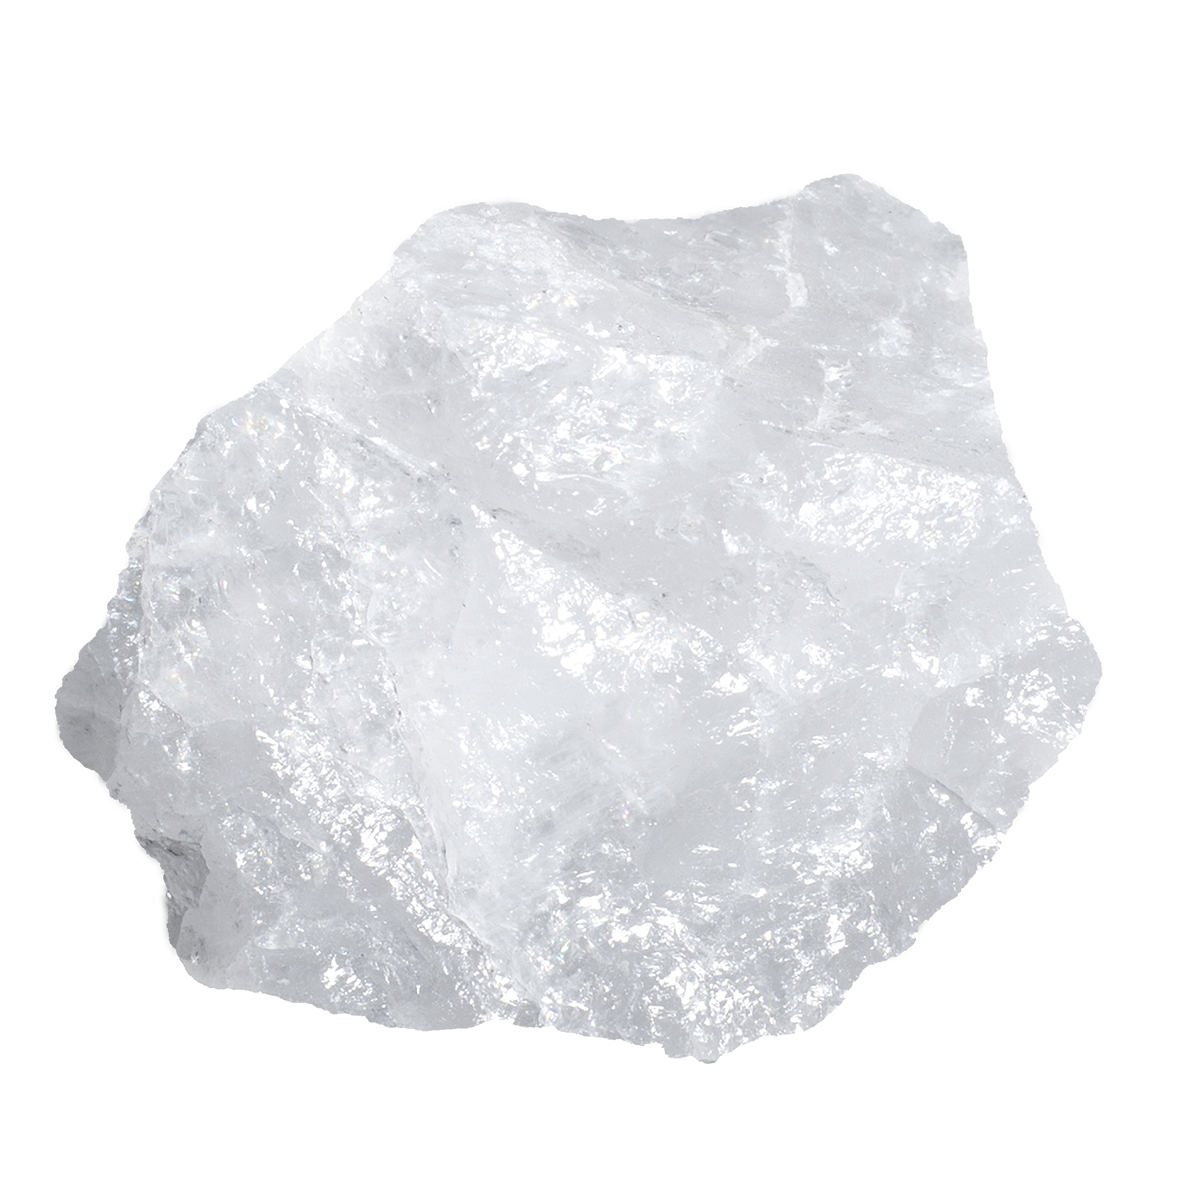 Cristal de roche brut - qlté extra - au kilo - Mineral Est